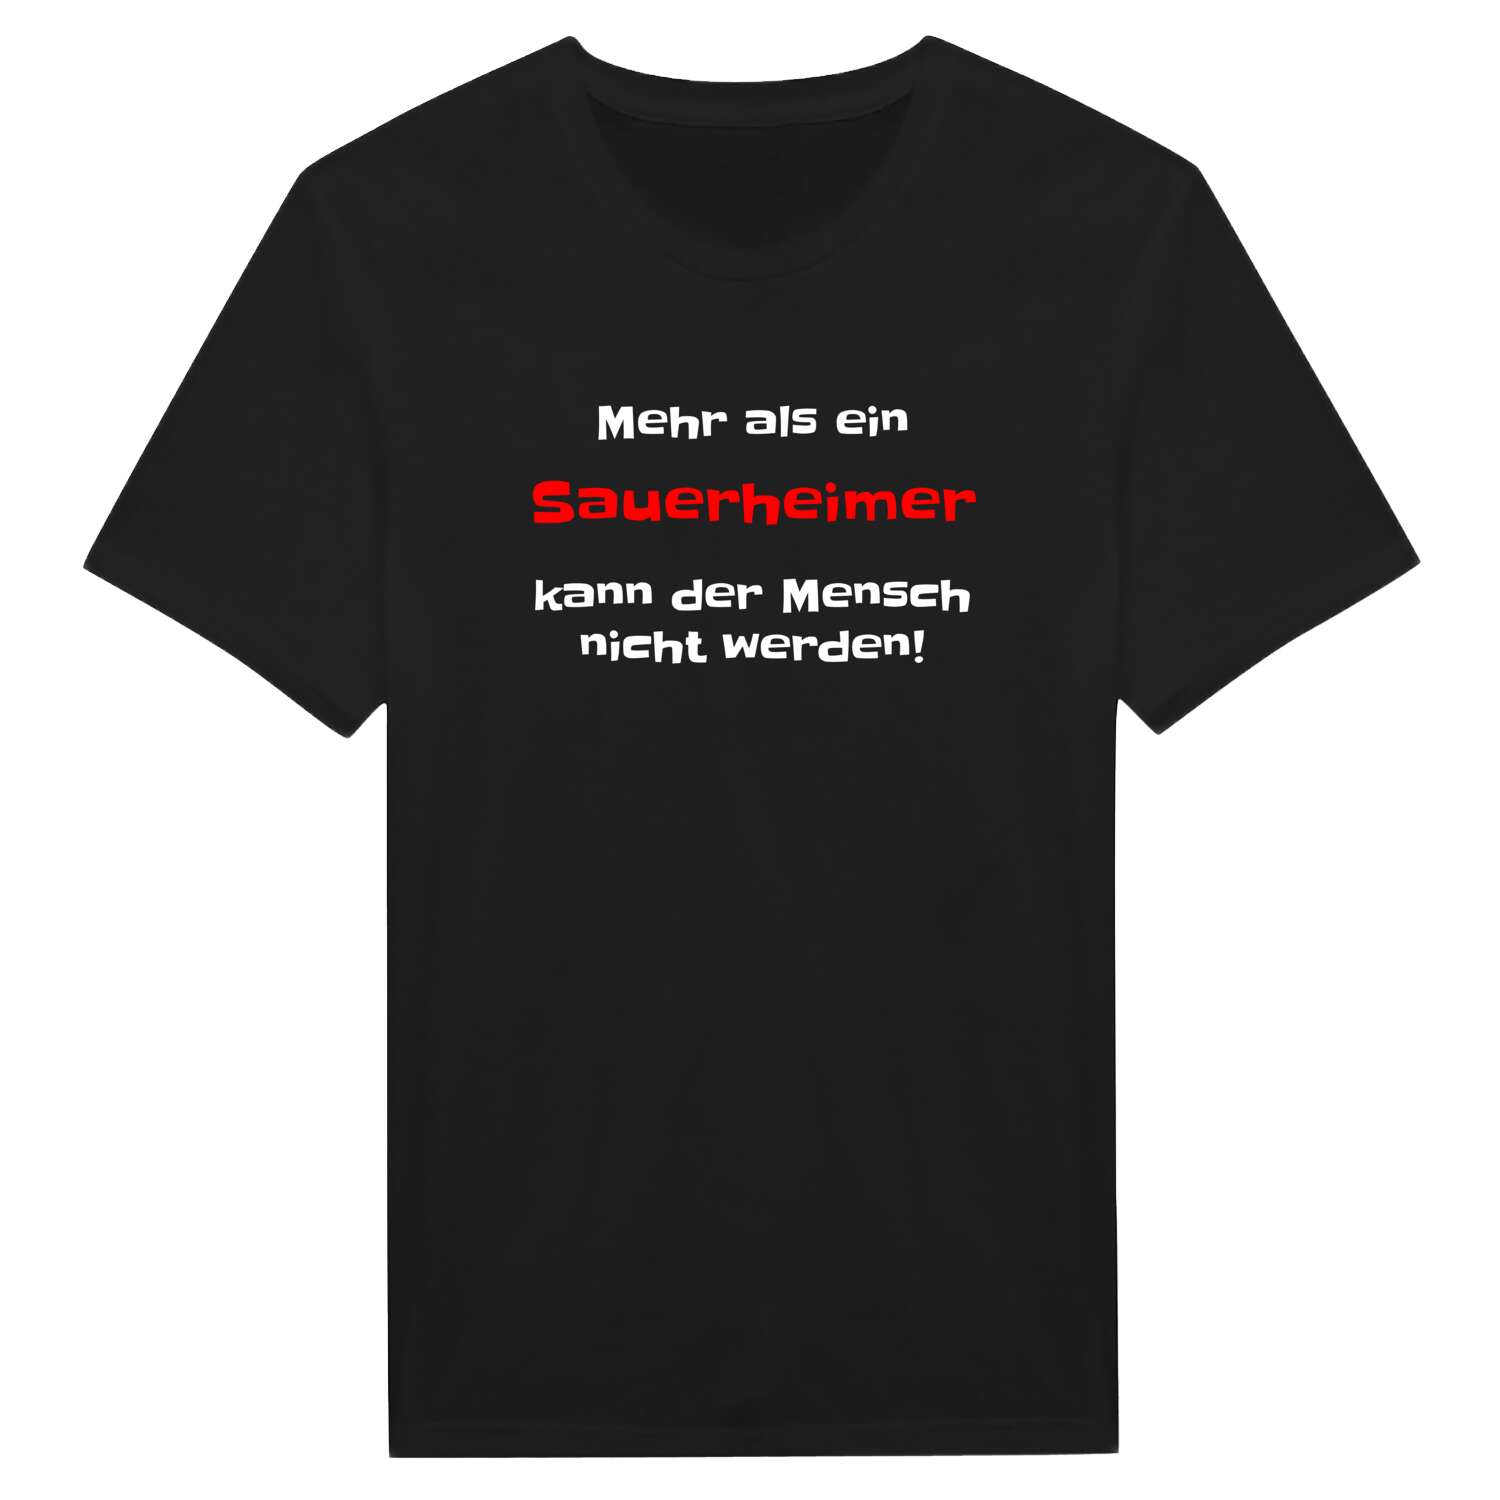 Sauerheim T-Shirt »Mehr als ein«